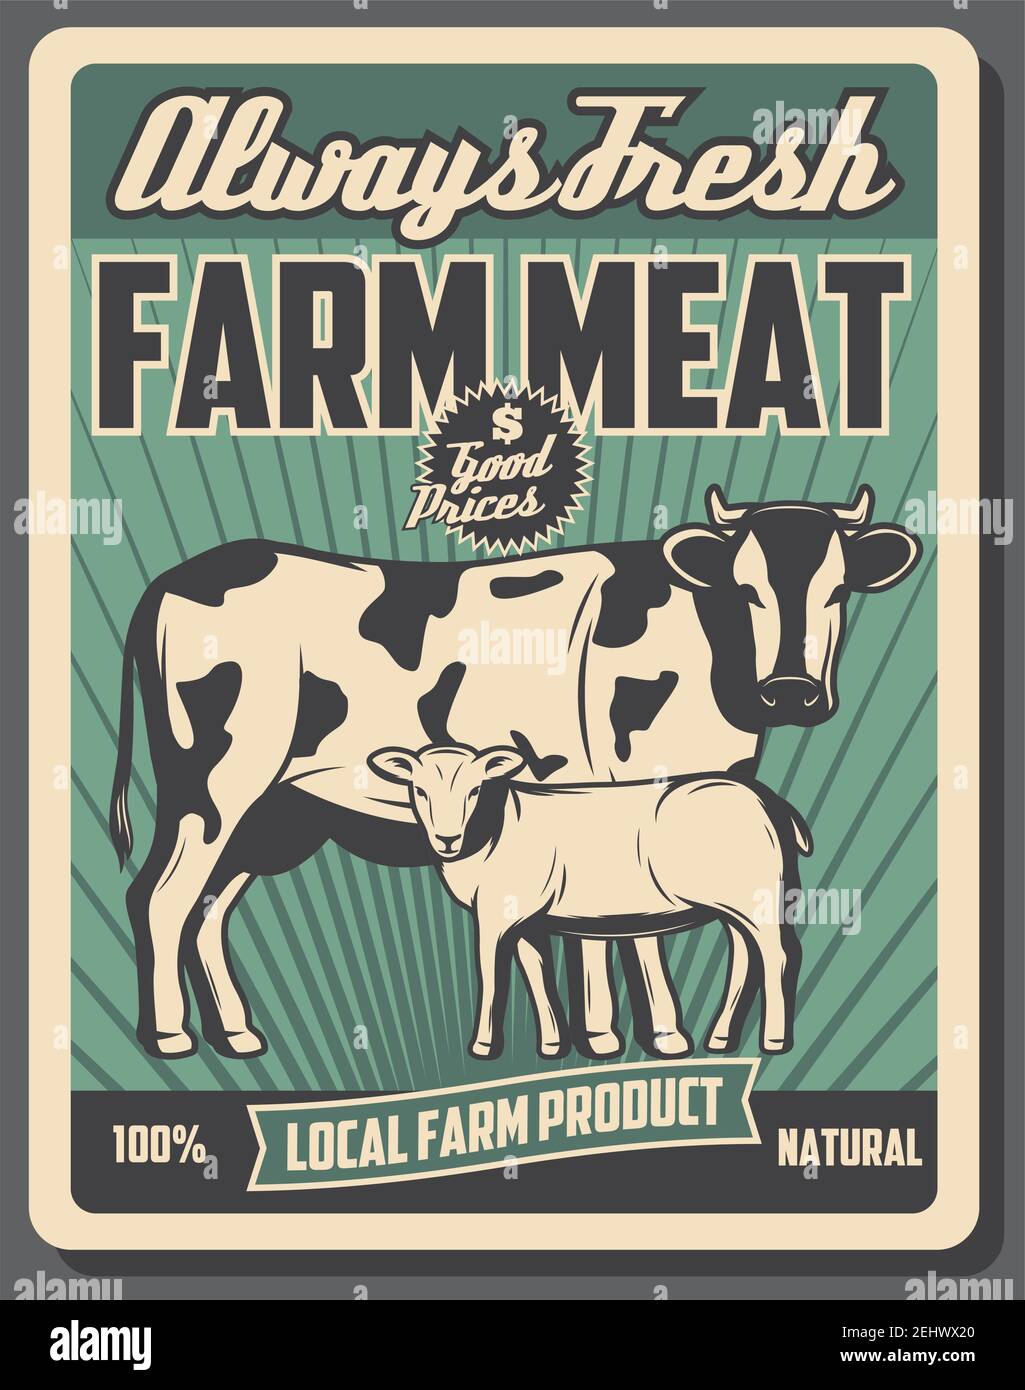 Poster retrò del mercato agricolo, macellai prodotti a base di carne provenienti da allevamenti bovini. Vintage design vettoriale, mucca e ovini animali di agnello. Agricoltura e agricoltura tema Illustrazione Vettoriale